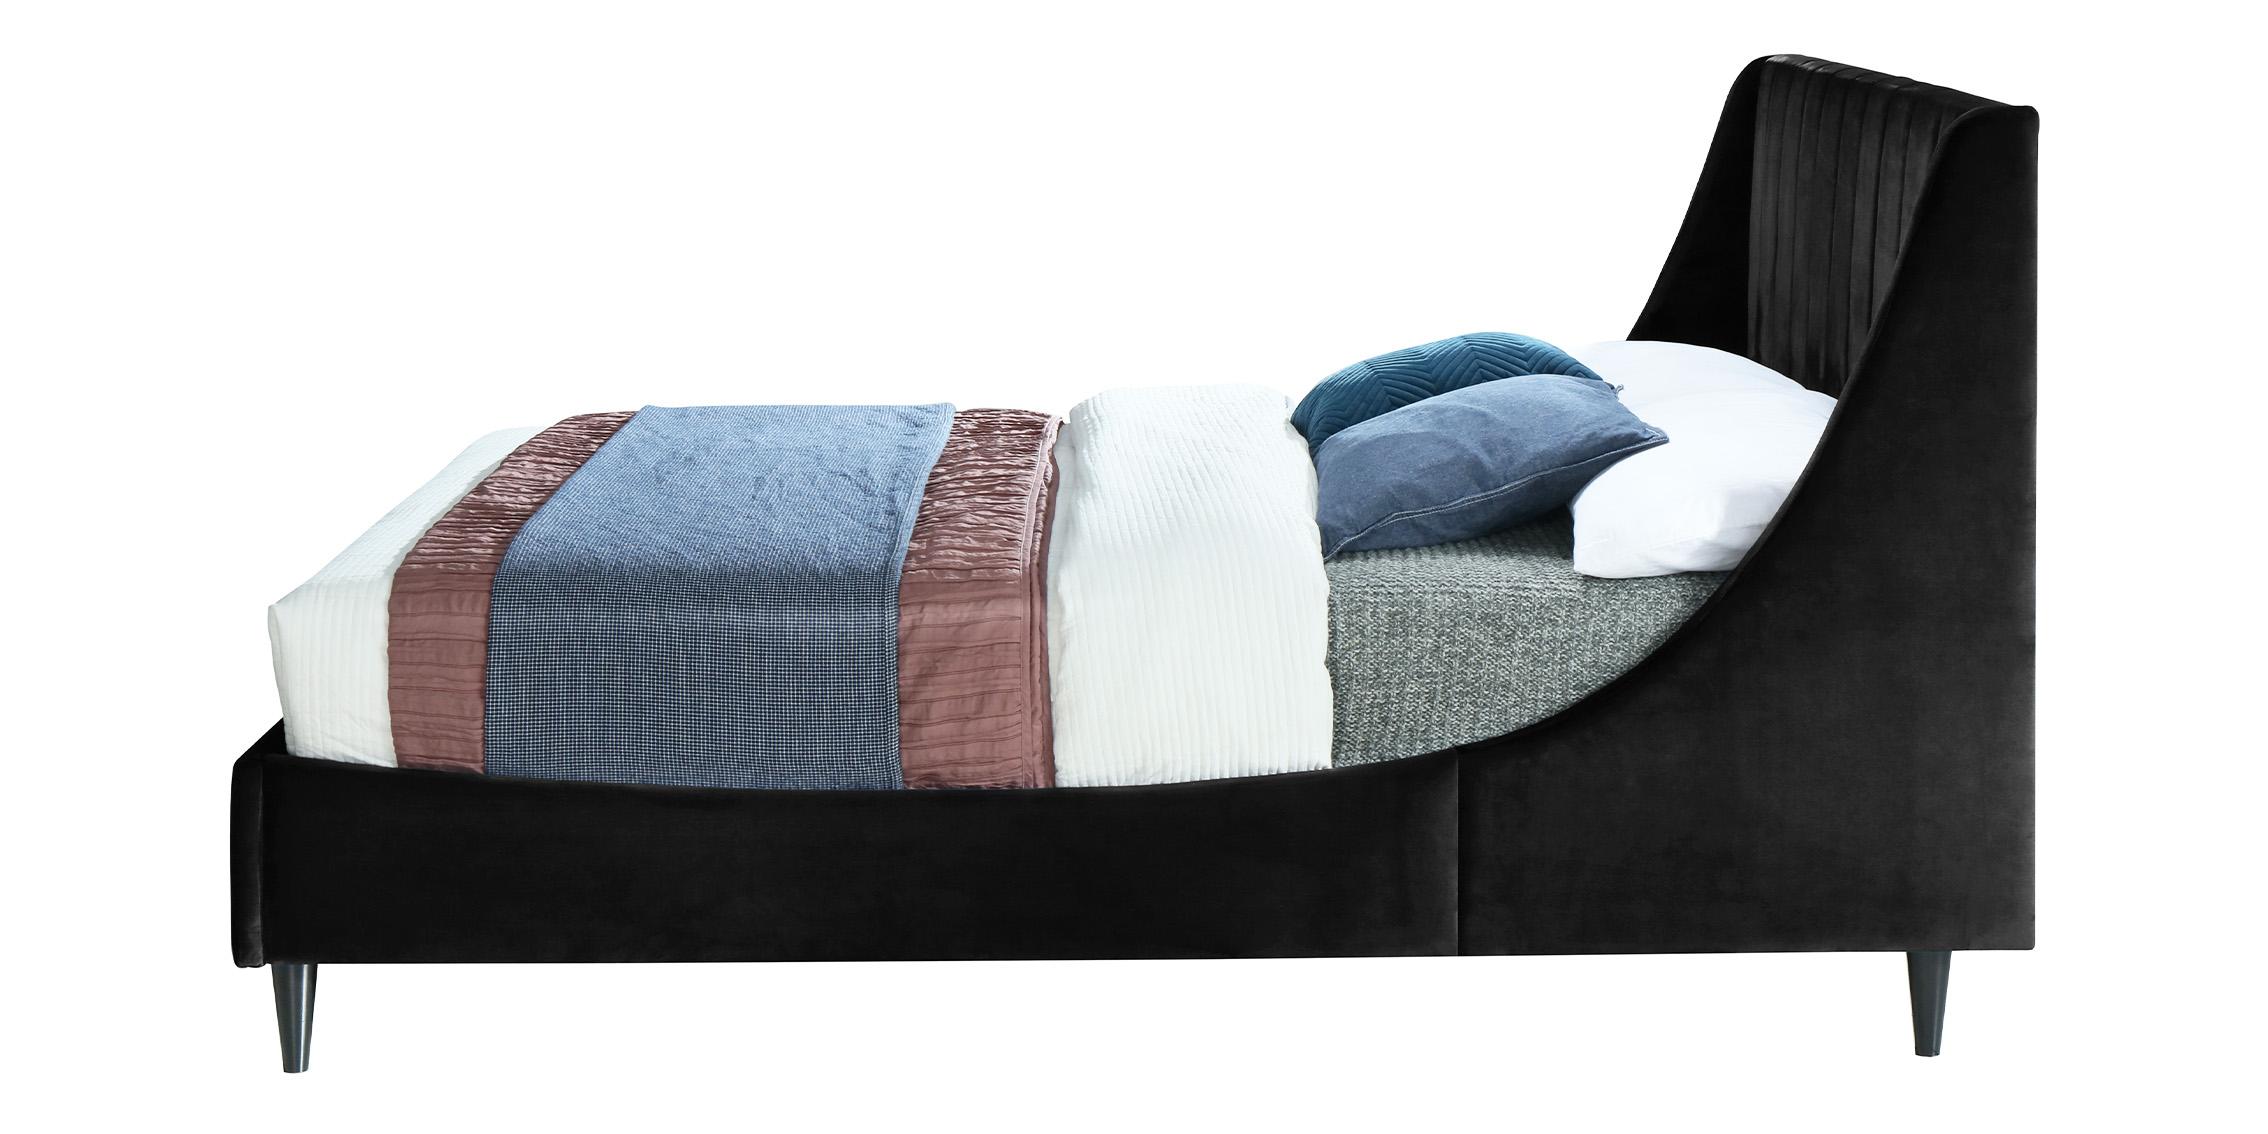 

    
EvaBlack-K Meridian Furniture Platform Bed
